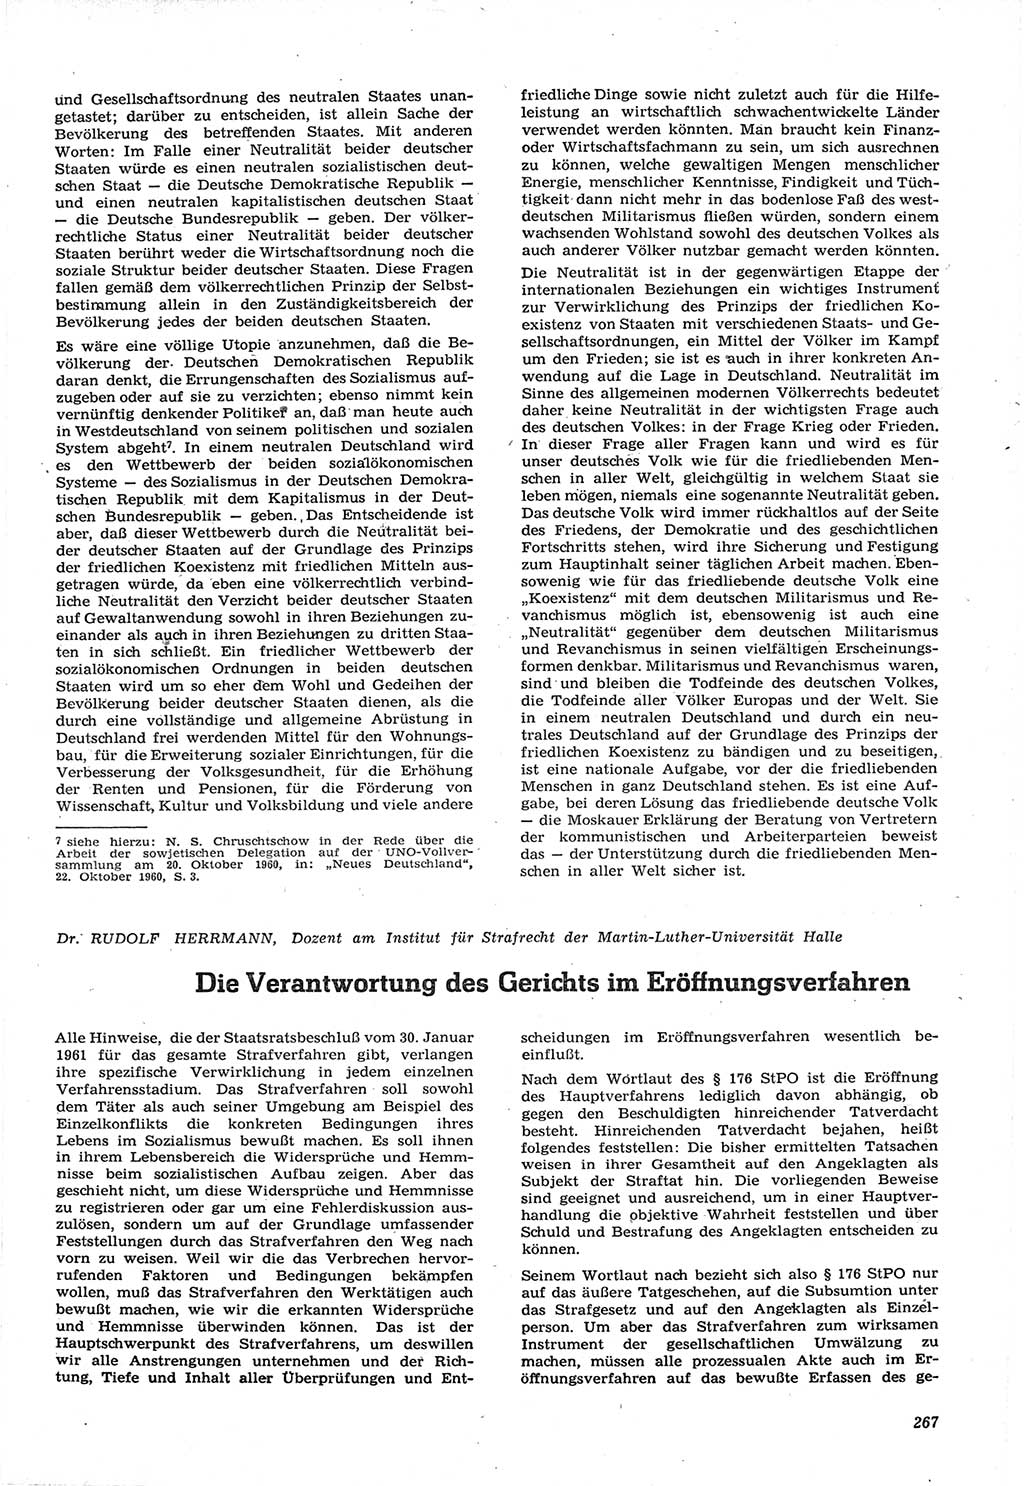 Neue Justiz (NJ), Zeitschrift für Recht und Rechtswissenschaft [Deutsche Demokratische Republik (DDR)], 15. Jahrgang 1961, Seite 267 (NJ DDR 1961, S. 267)